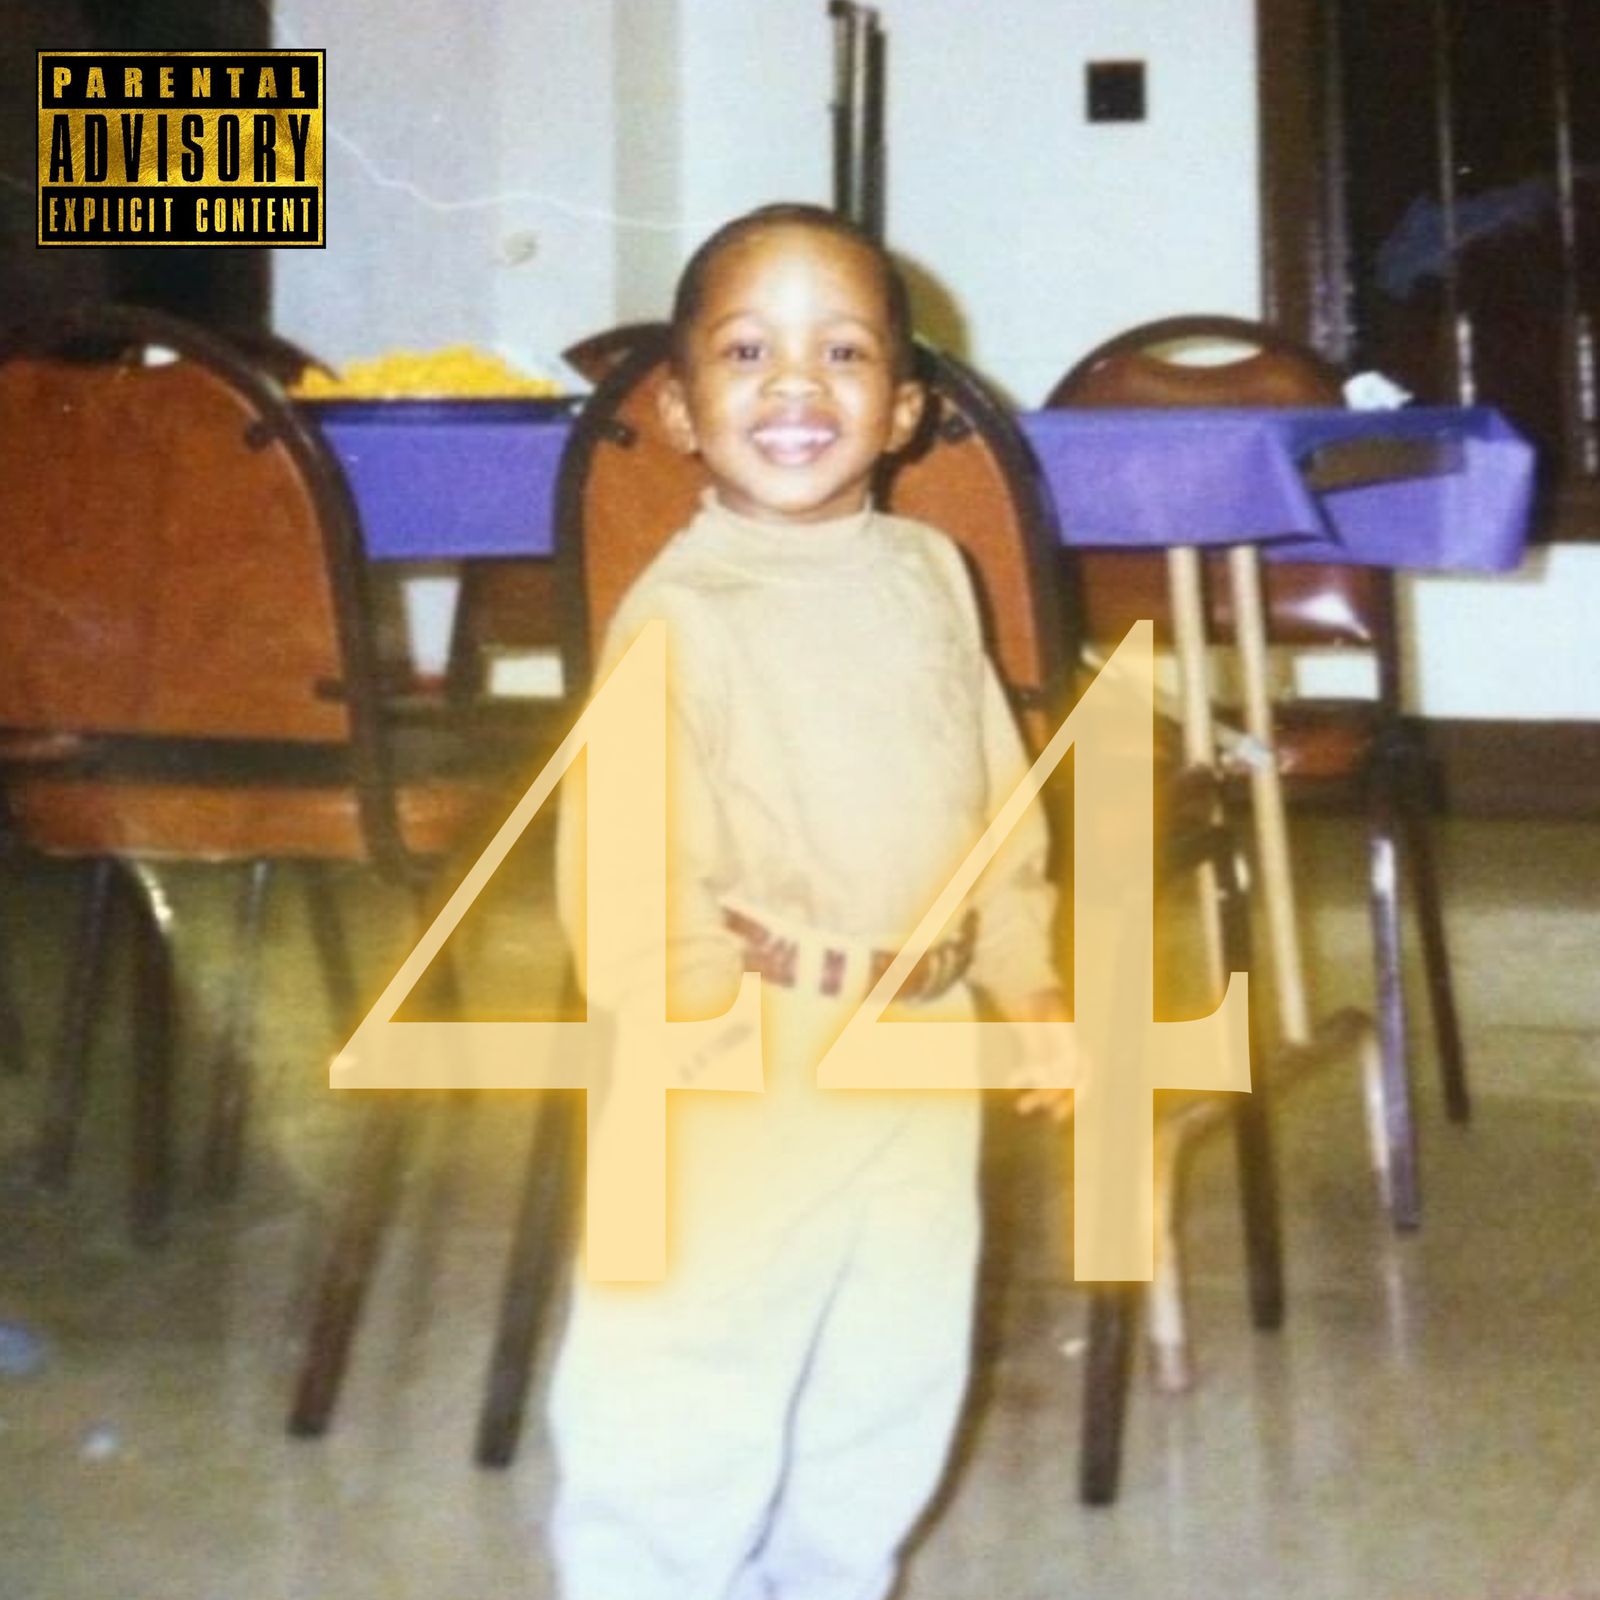 JAY EXODUS RELEASES NEW ALBUM ‘44’